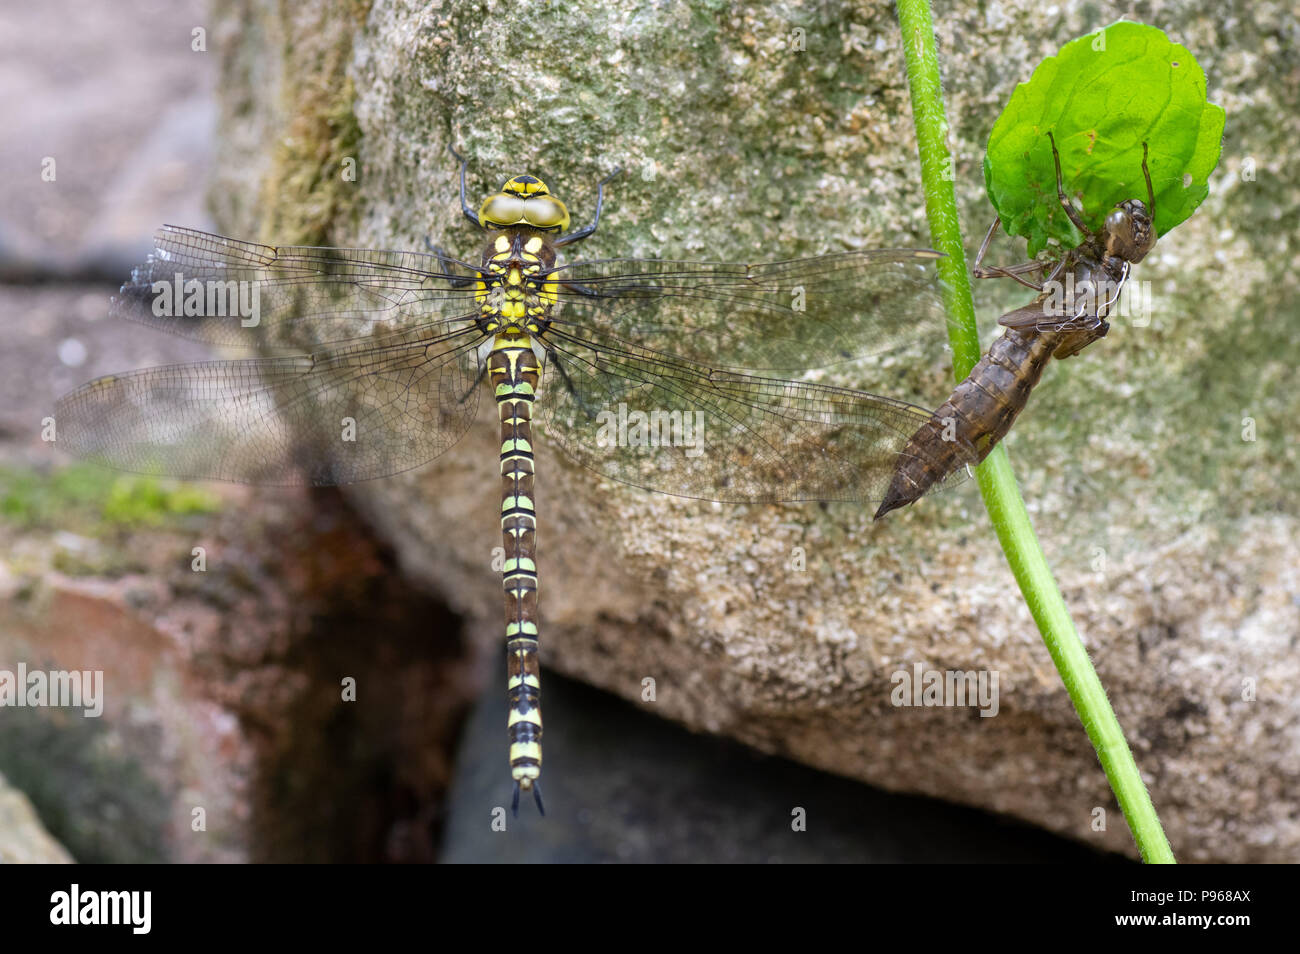 Southern hawker (Aeshna cyanea) dragonfly con esuvia. Insetti femmina nell'ordine odonati, famiglia Aeshnidae, accanto a shed pelle larvale Foto Stock